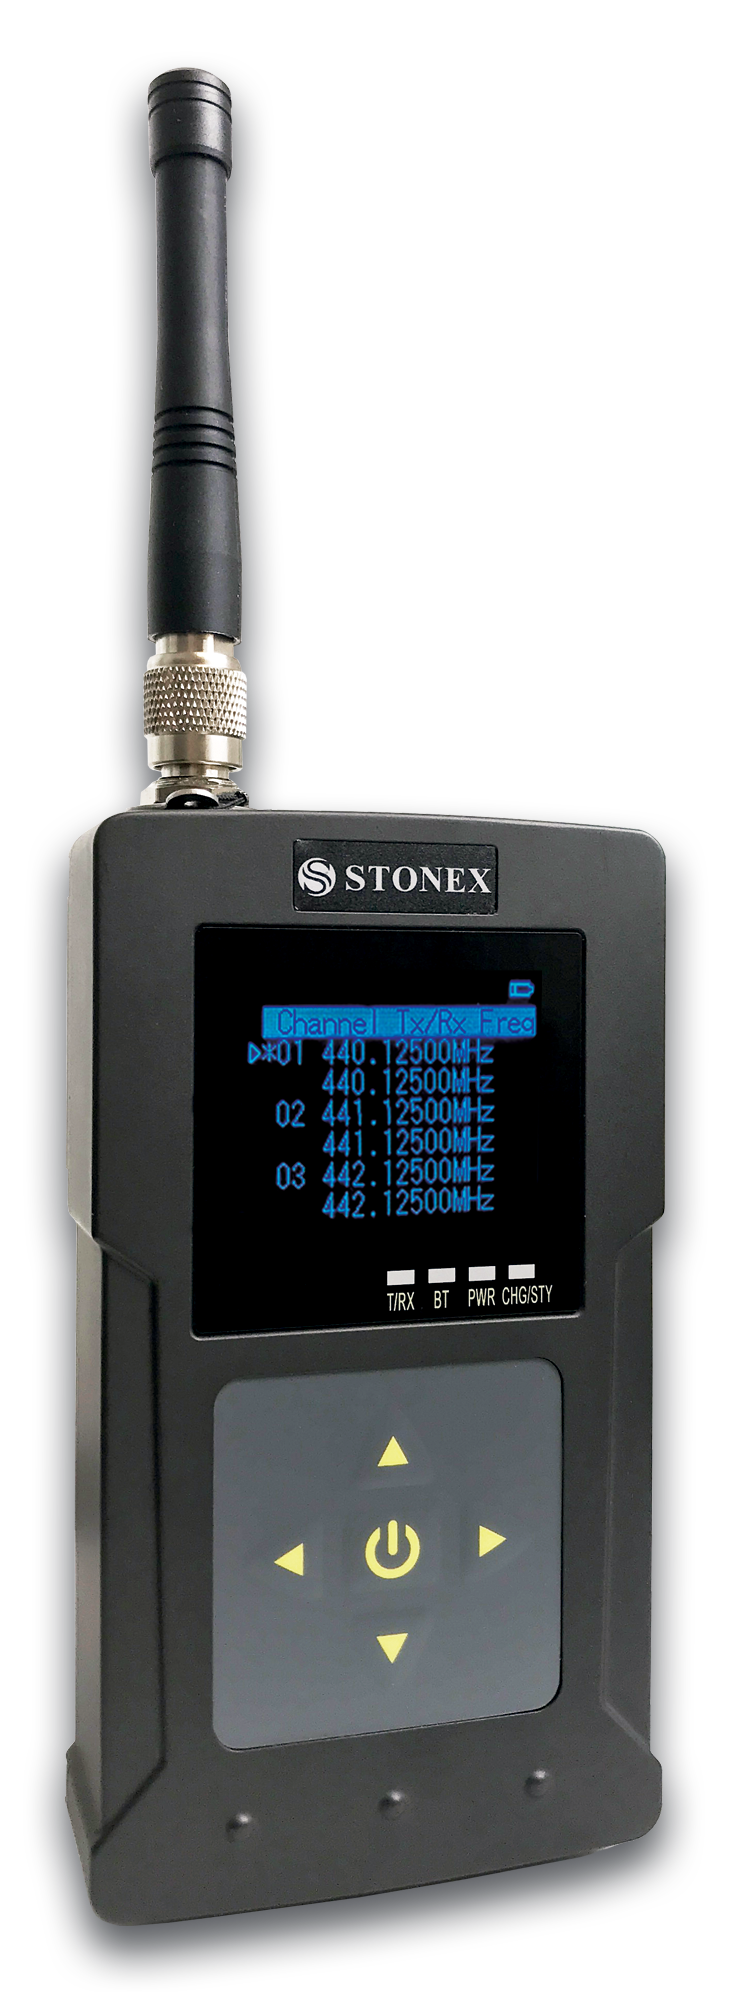 Stonex SR02 UHF Radio modem 2W